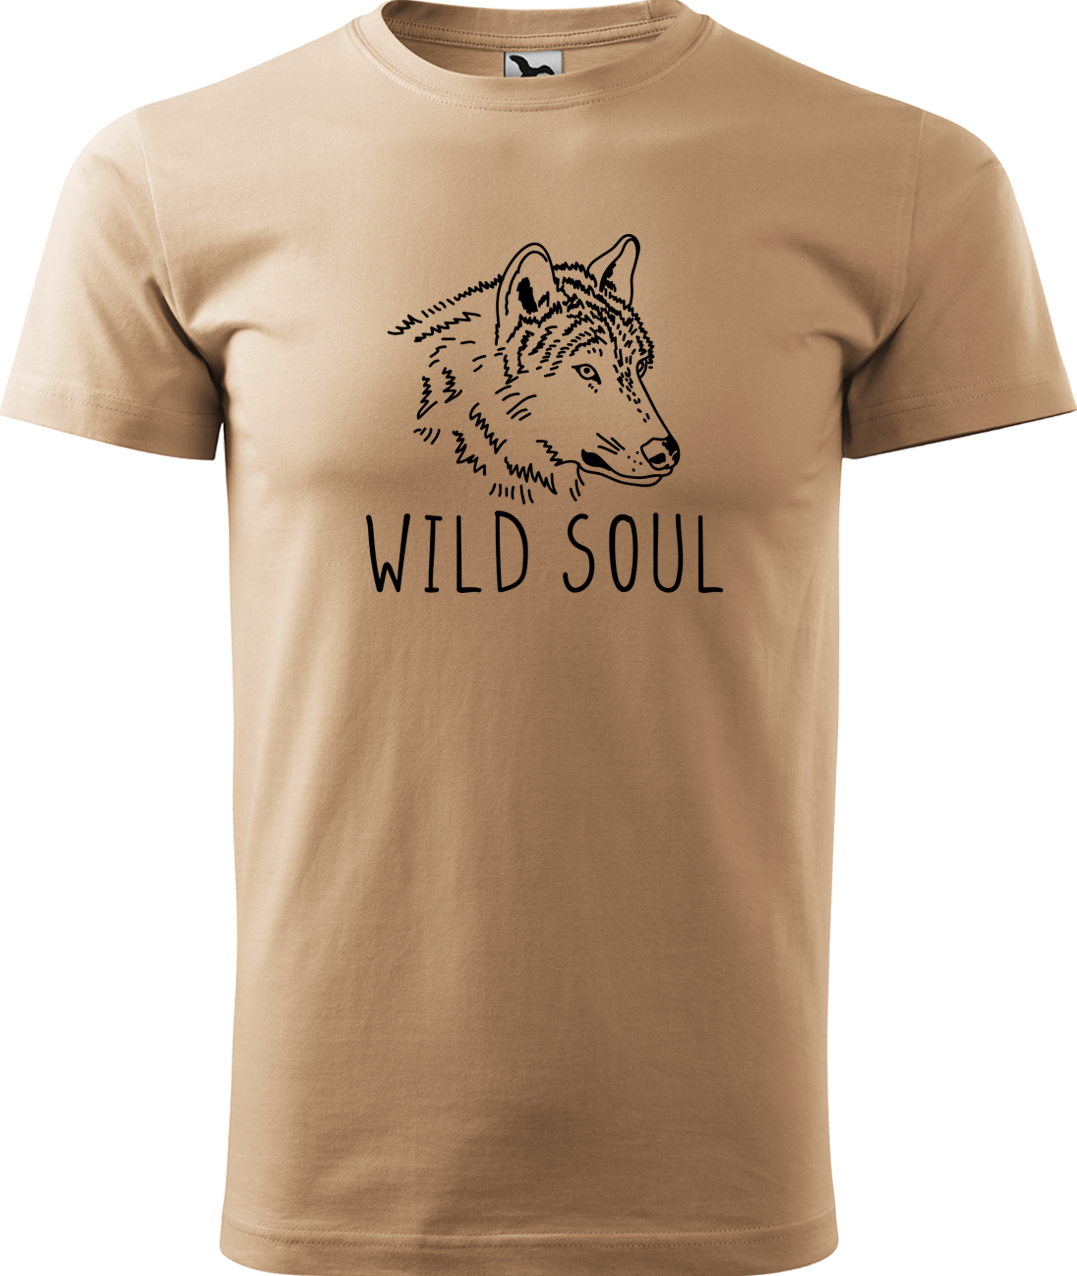 Pánské tričko s vlkem - Wild soul Velikost: S, Barva: Písková (08), Střih: pánský